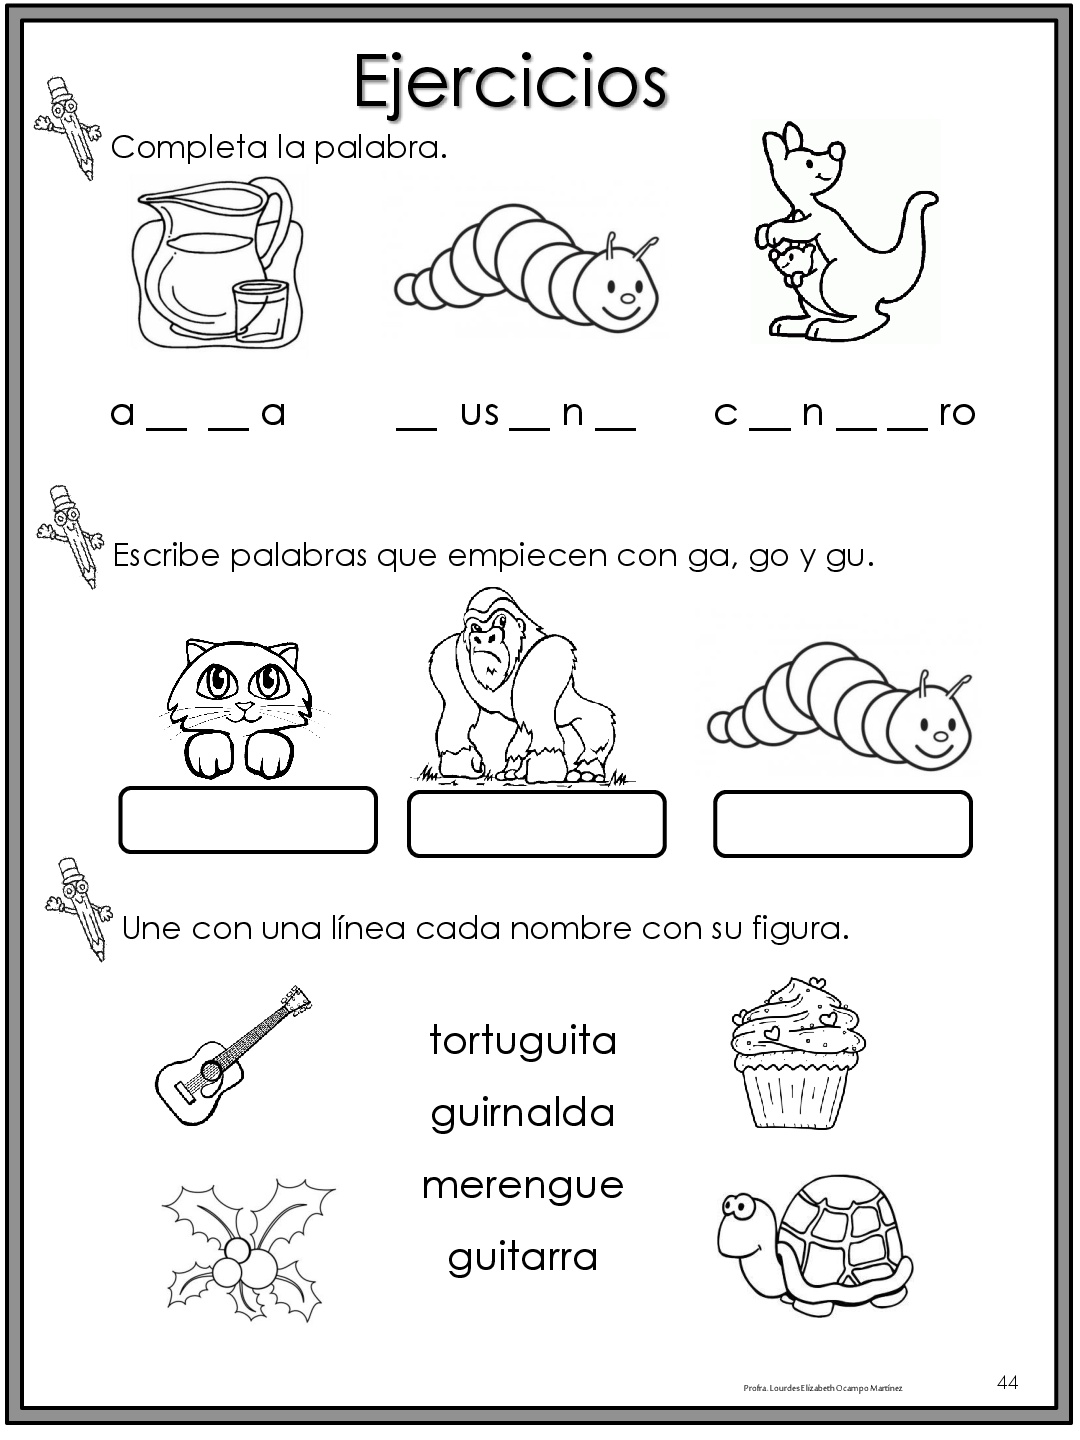 50-ejercicios-de-lecto-escritura-para-preescolar-y-primaria-023 Imagenes Educativas